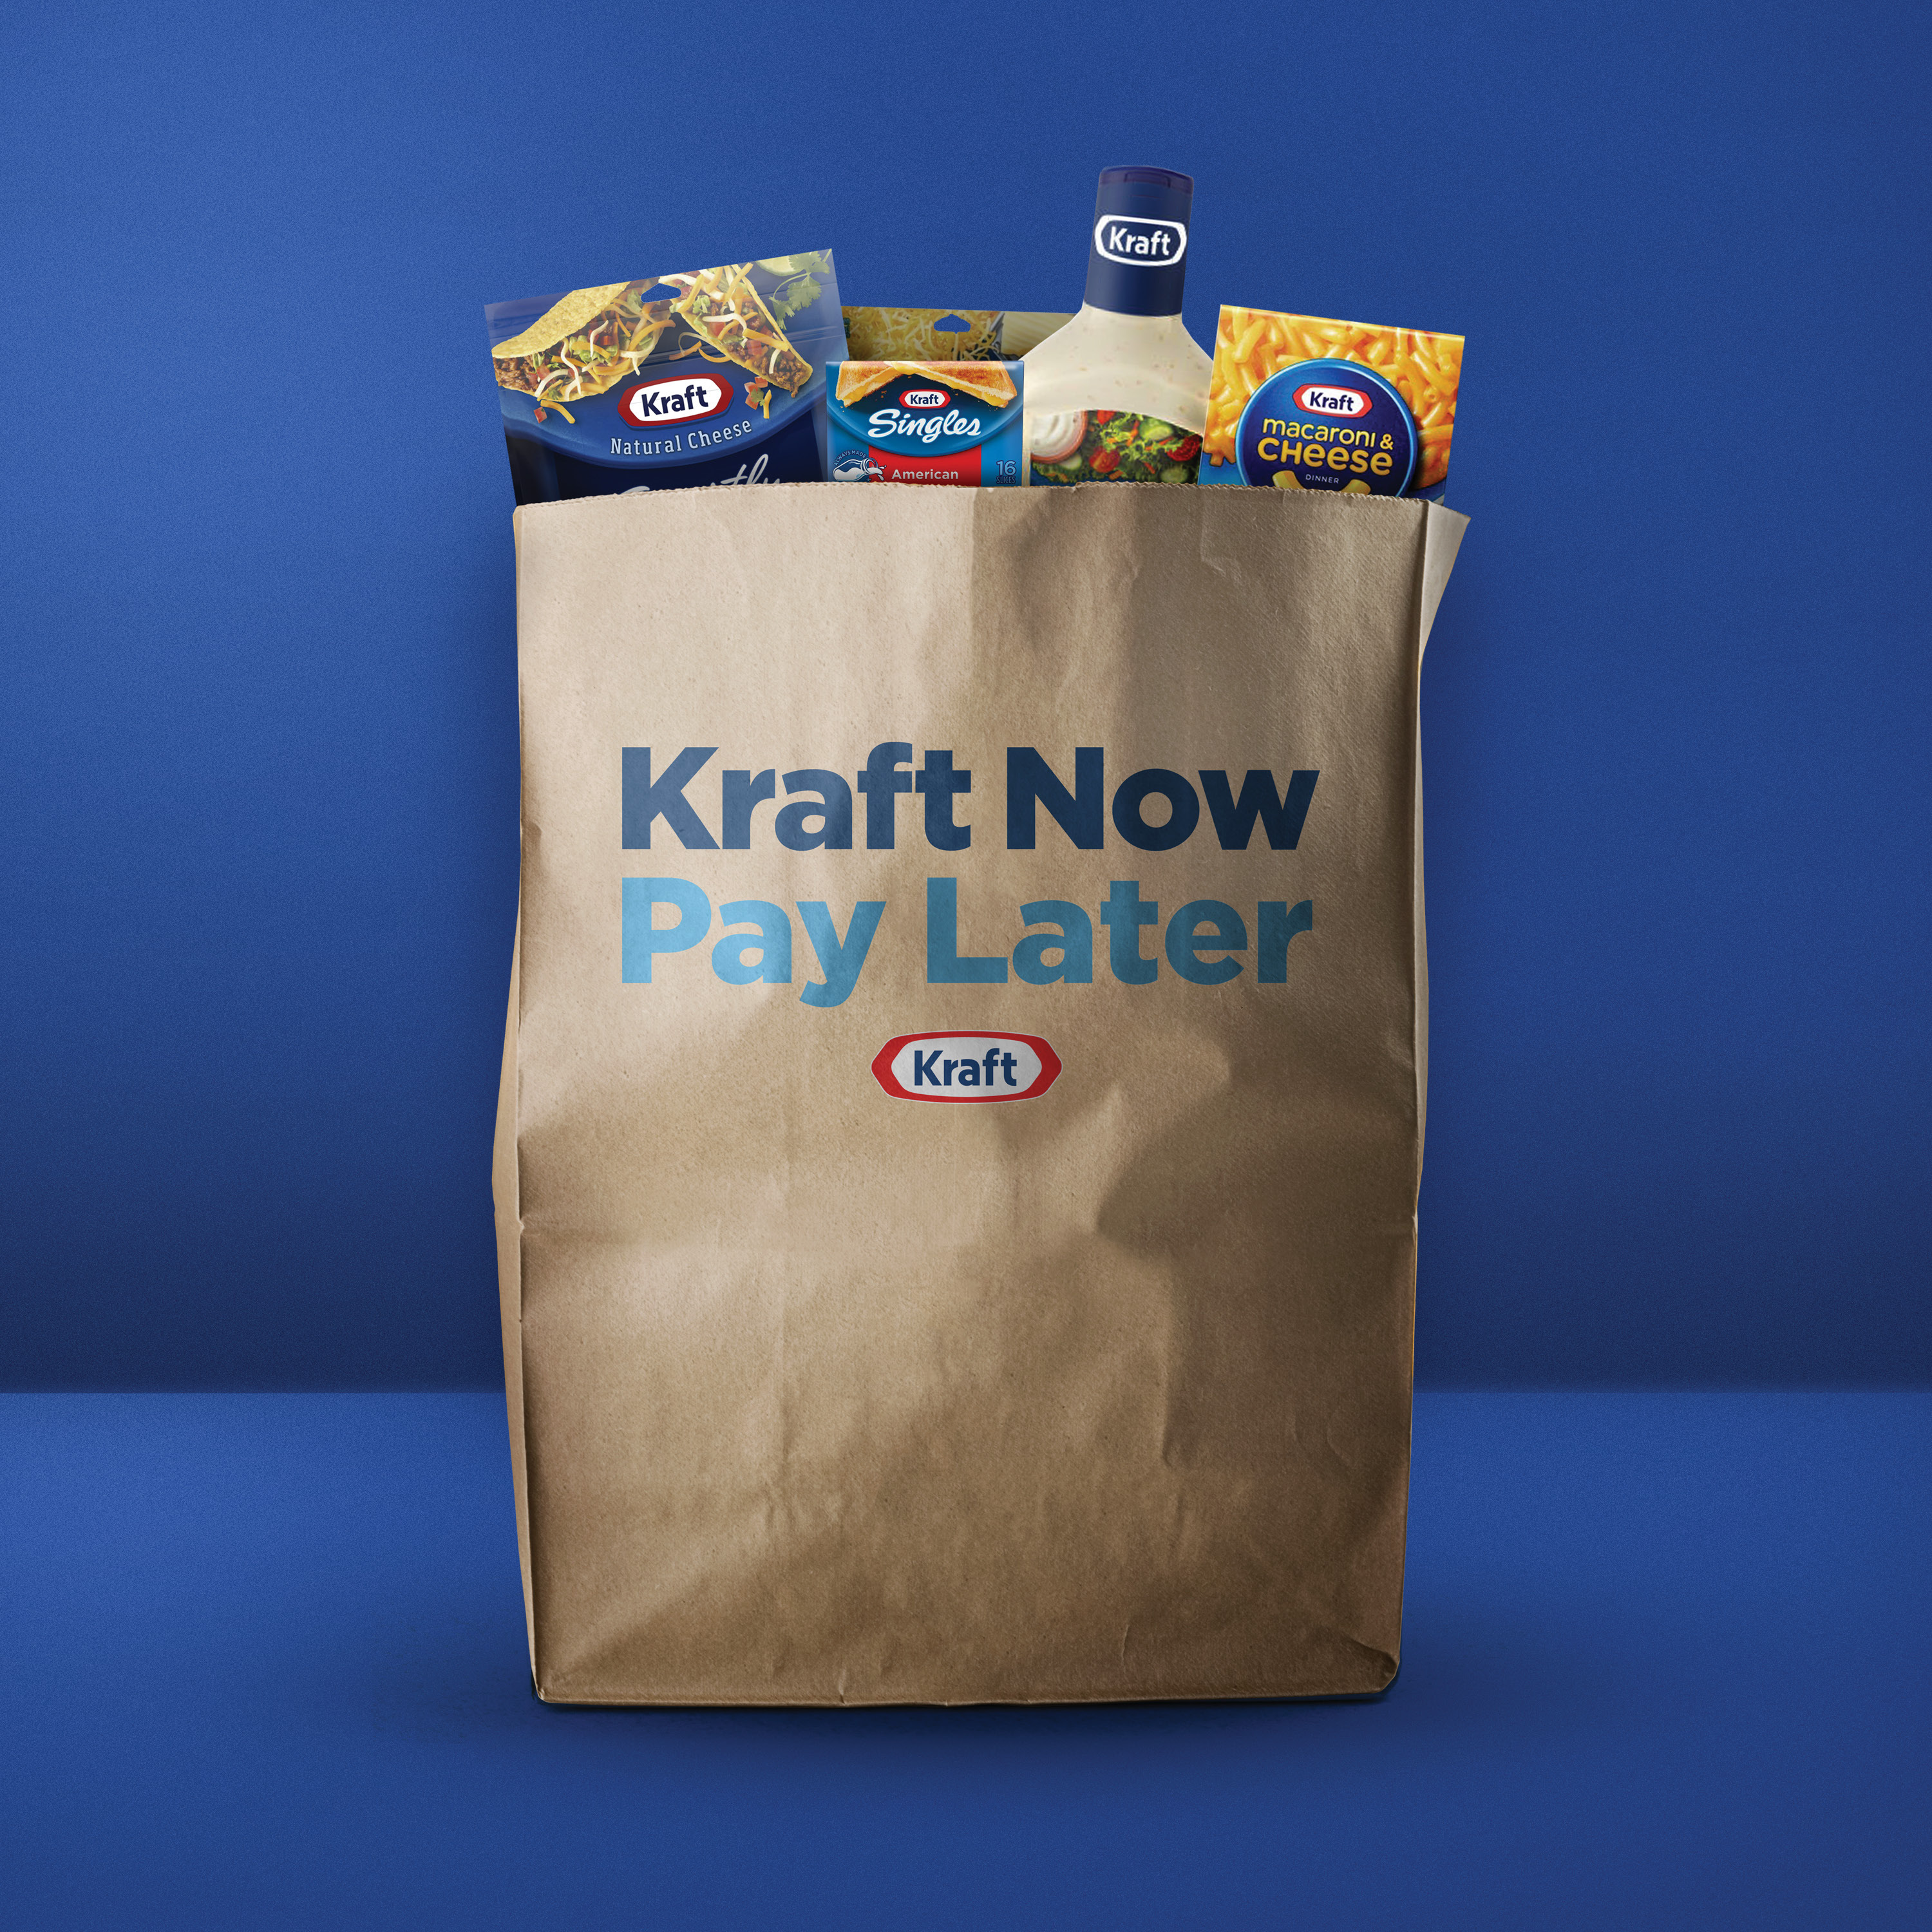 Crear una marca que inspira. El caso Kraft.